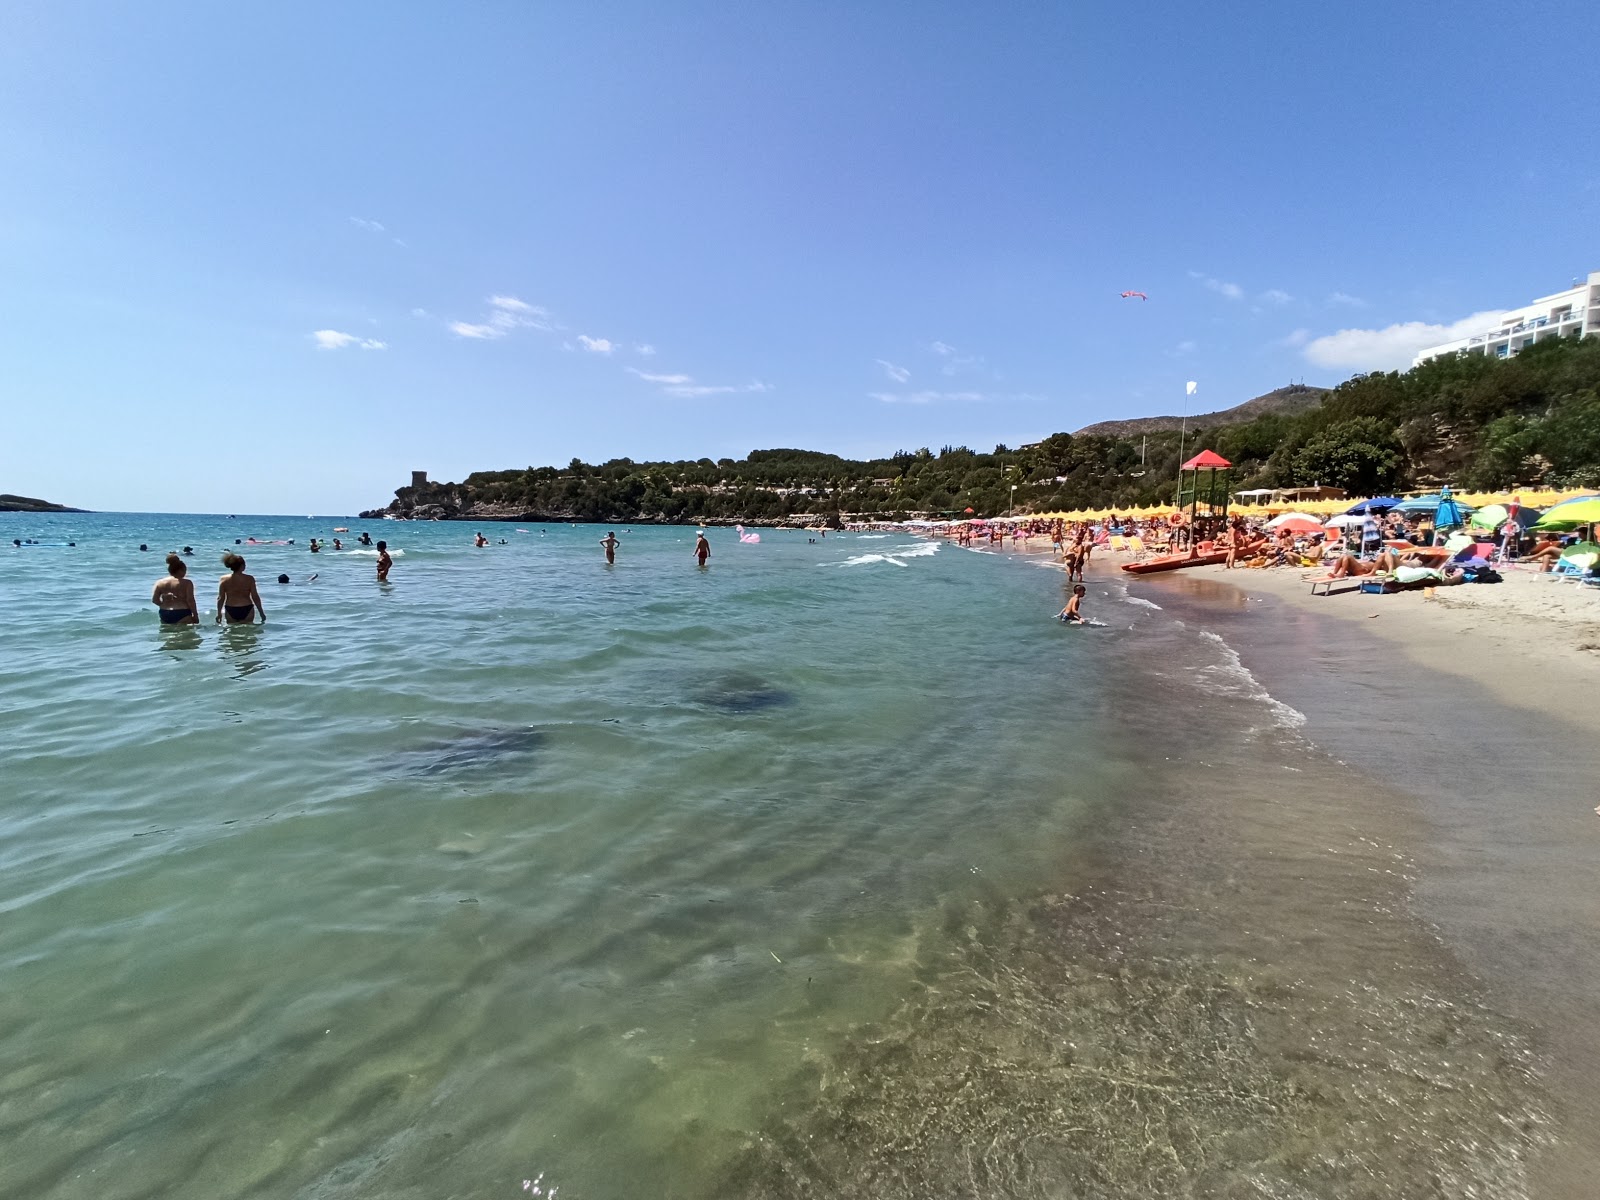 Calanca Plajı'in fotoğrafı i̇nce kahverengi kum yüzey ile